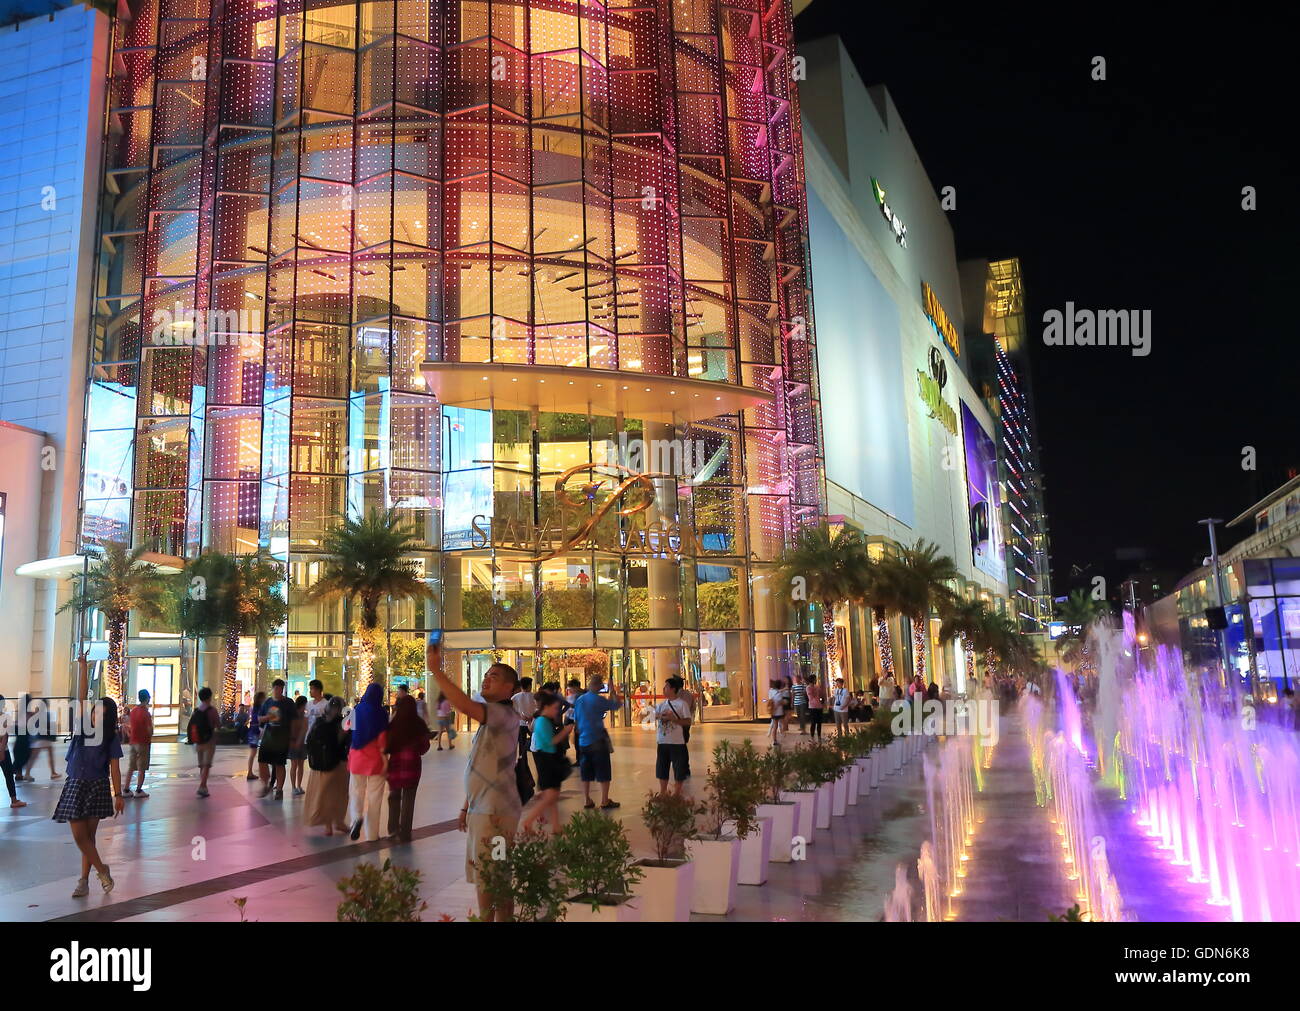 Front View of Prada Store in Siam Paragon Mall, Bangkok Editorial  Photography - Image of bangkok, high: 42983087